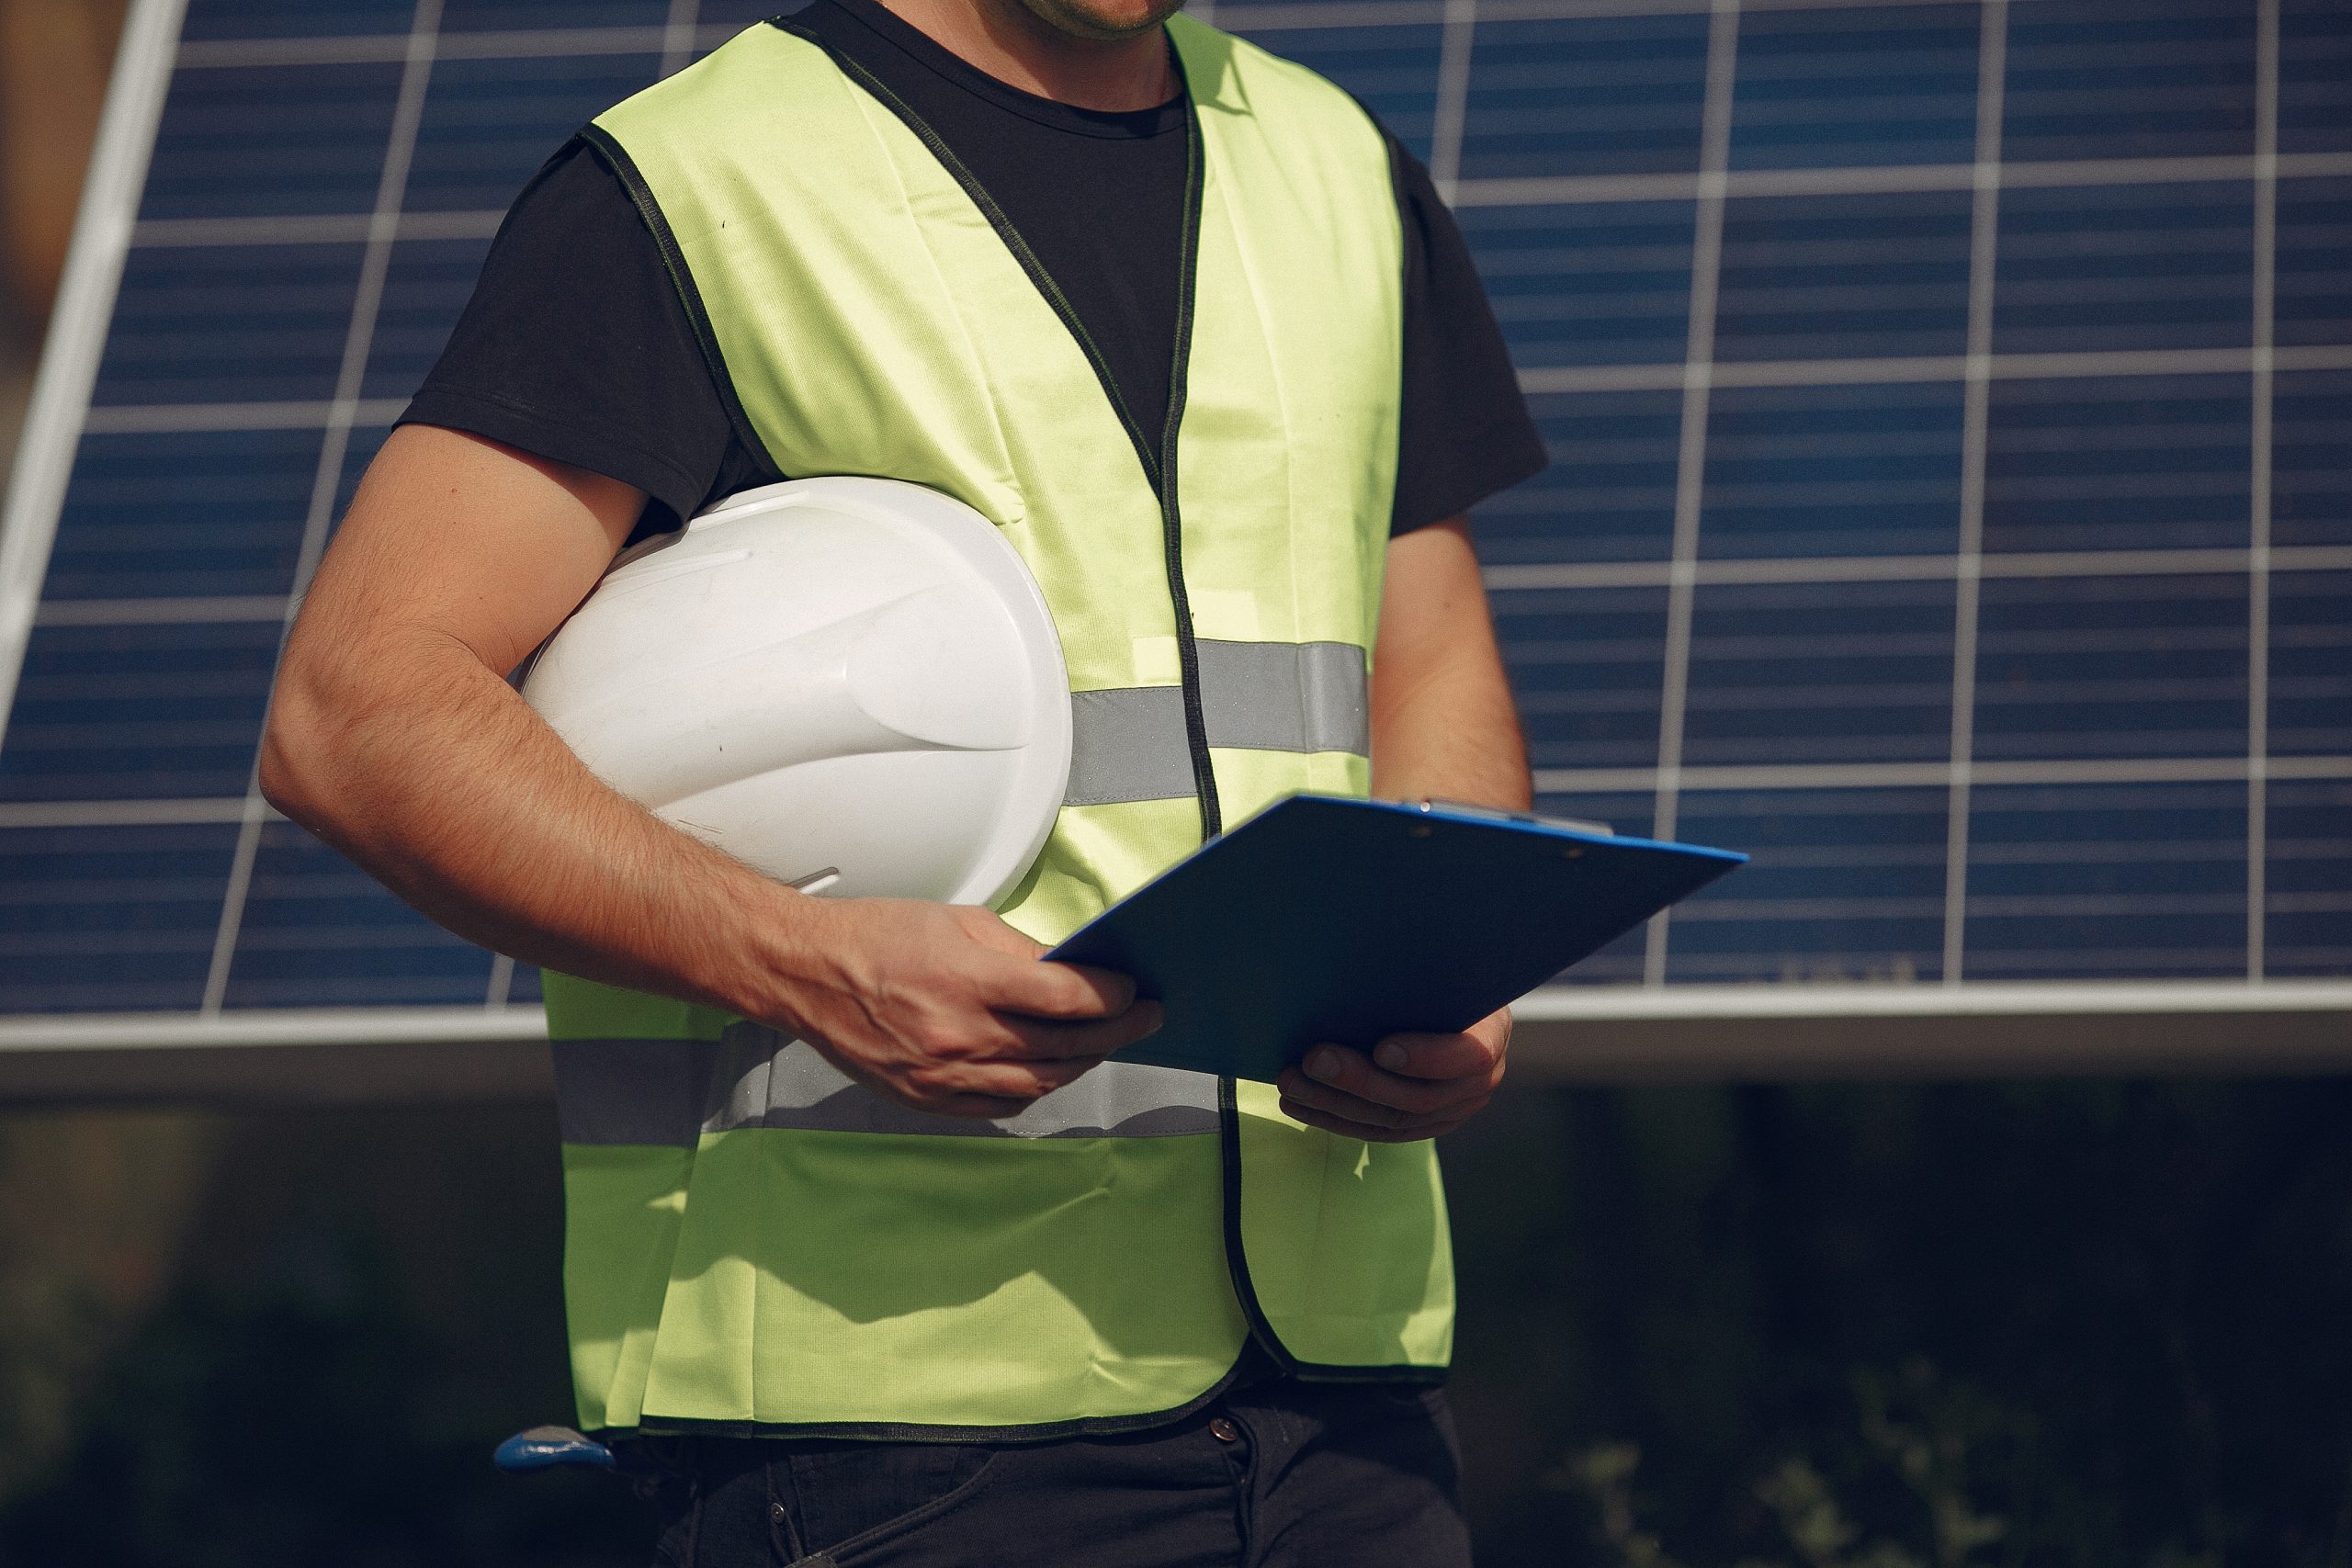 Um trabalhador com vestuário de segurança está com um capacete e uma prancheta, diante de um painel solar, sugerindo que ele está realizando tarefas relacionadas à energia solar. O rosto do trabalhador não é visível.